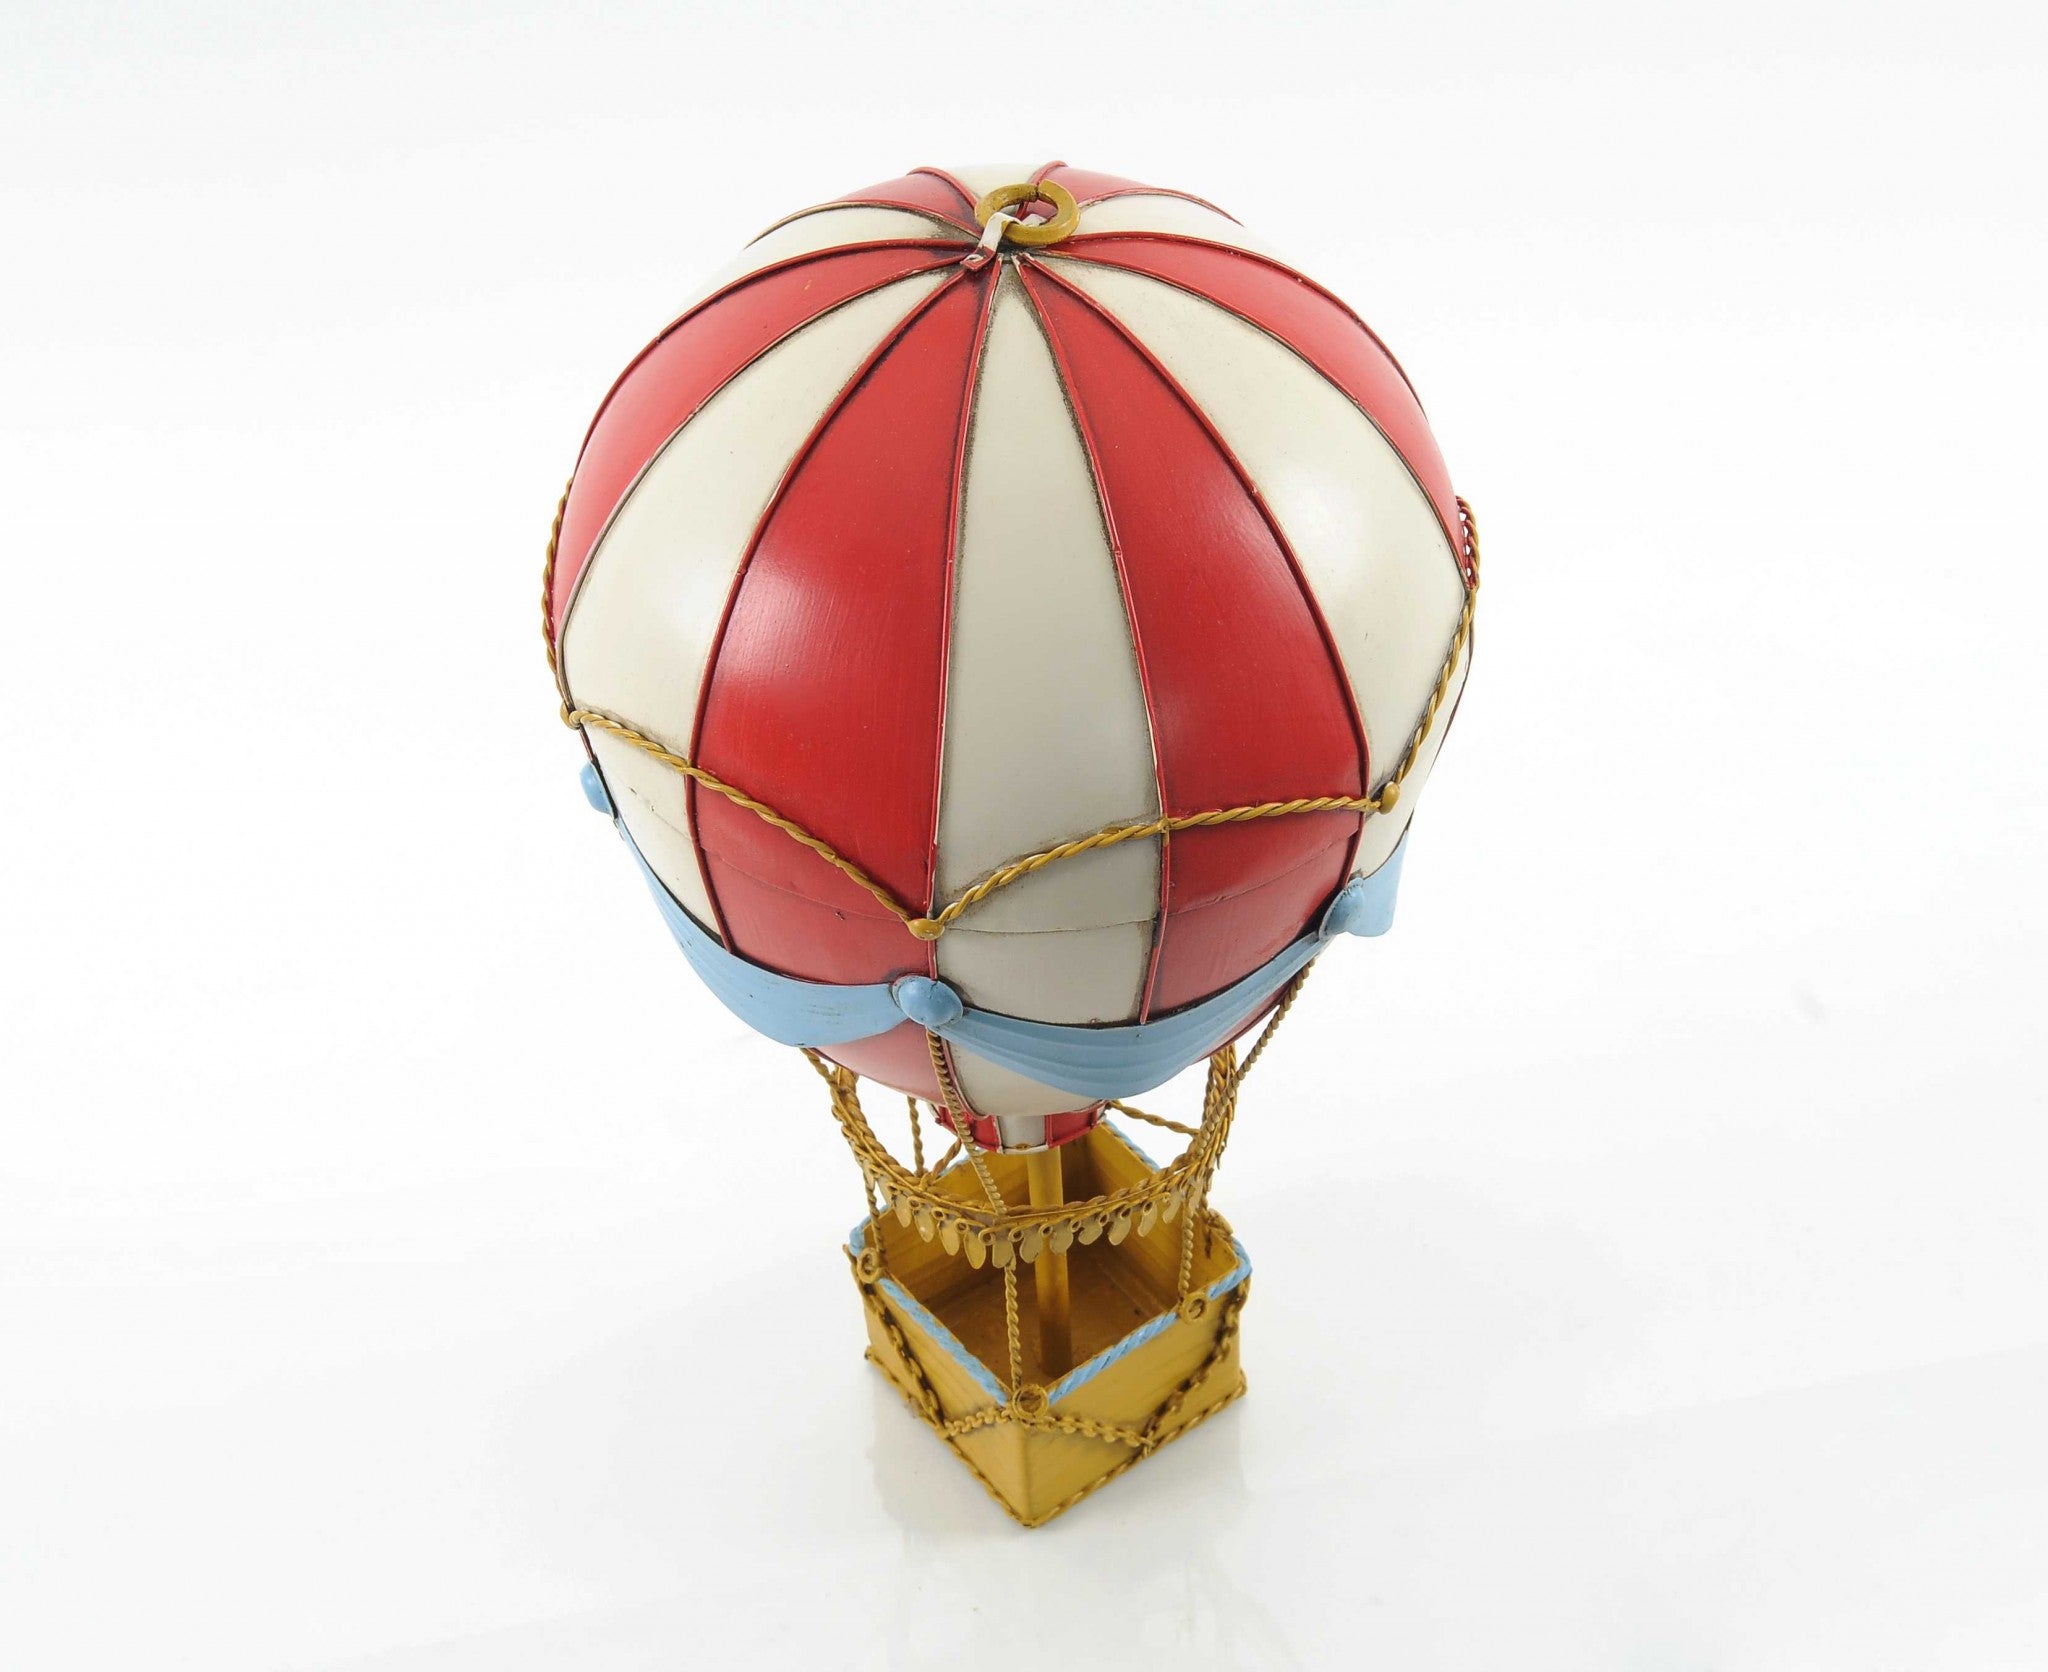 8.5" X 8.5" X 14.5" Vintage Hot Air Balloon